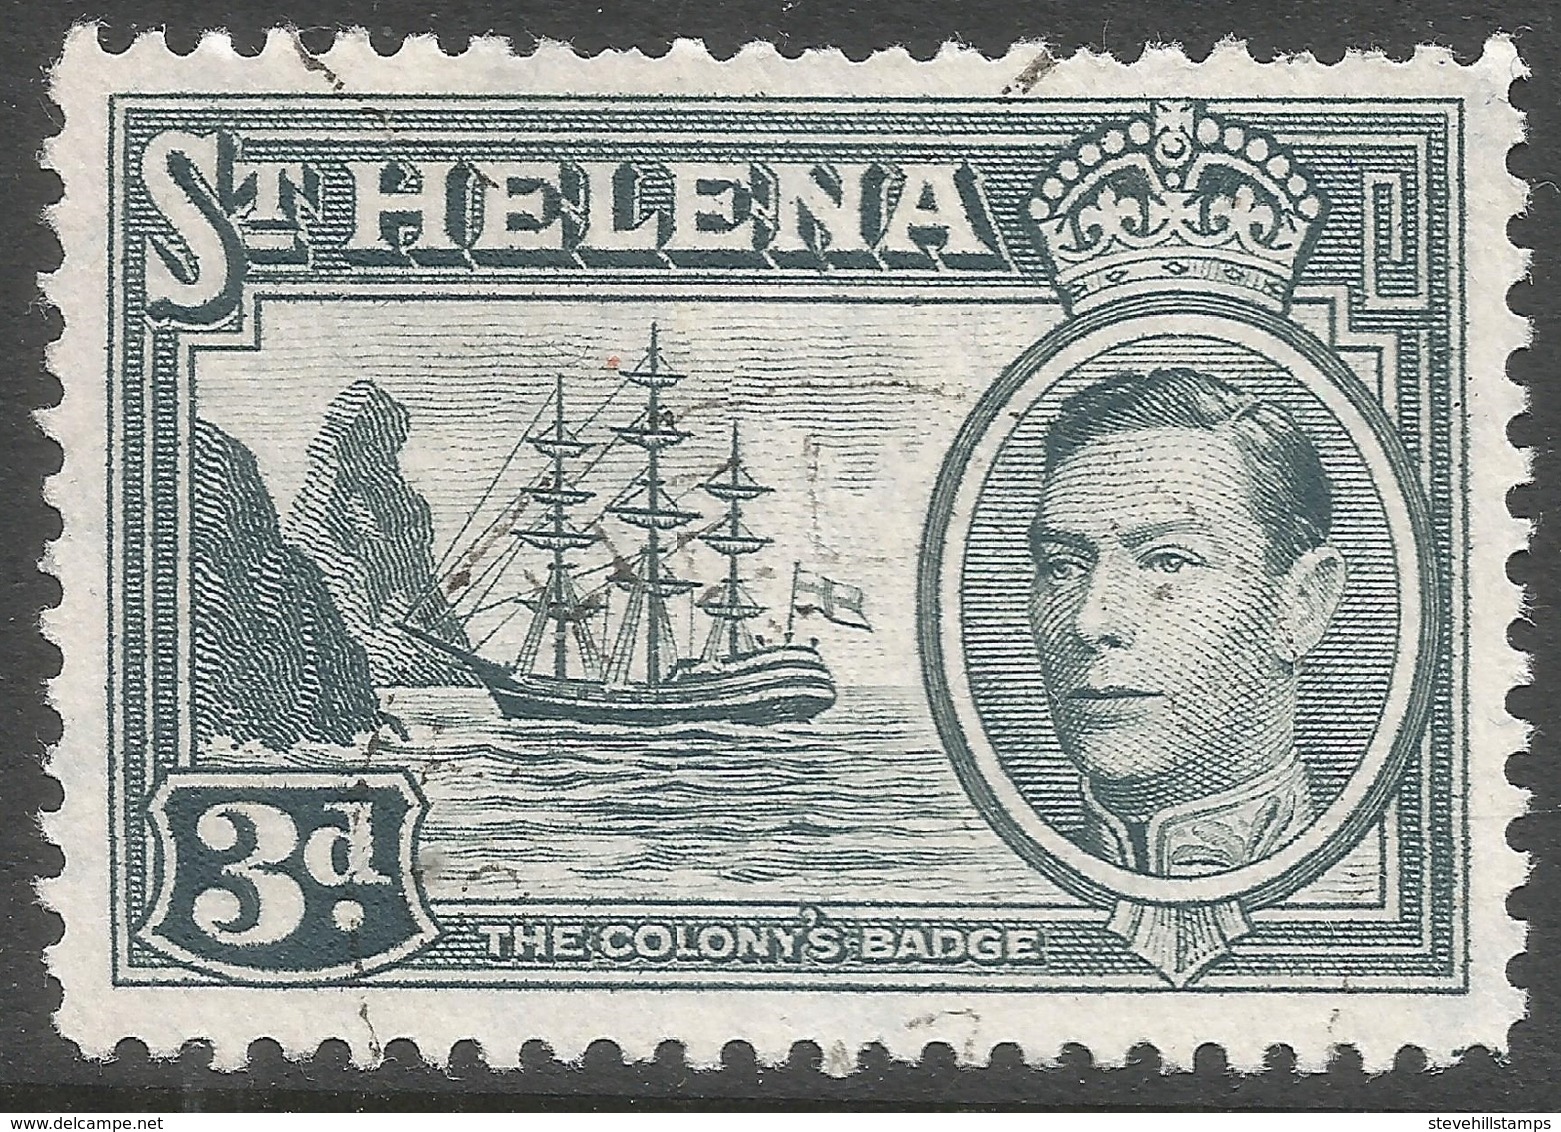 St Helena. 1938-44 KGVI. 3d Used. SG 135a - Saint Helena Island